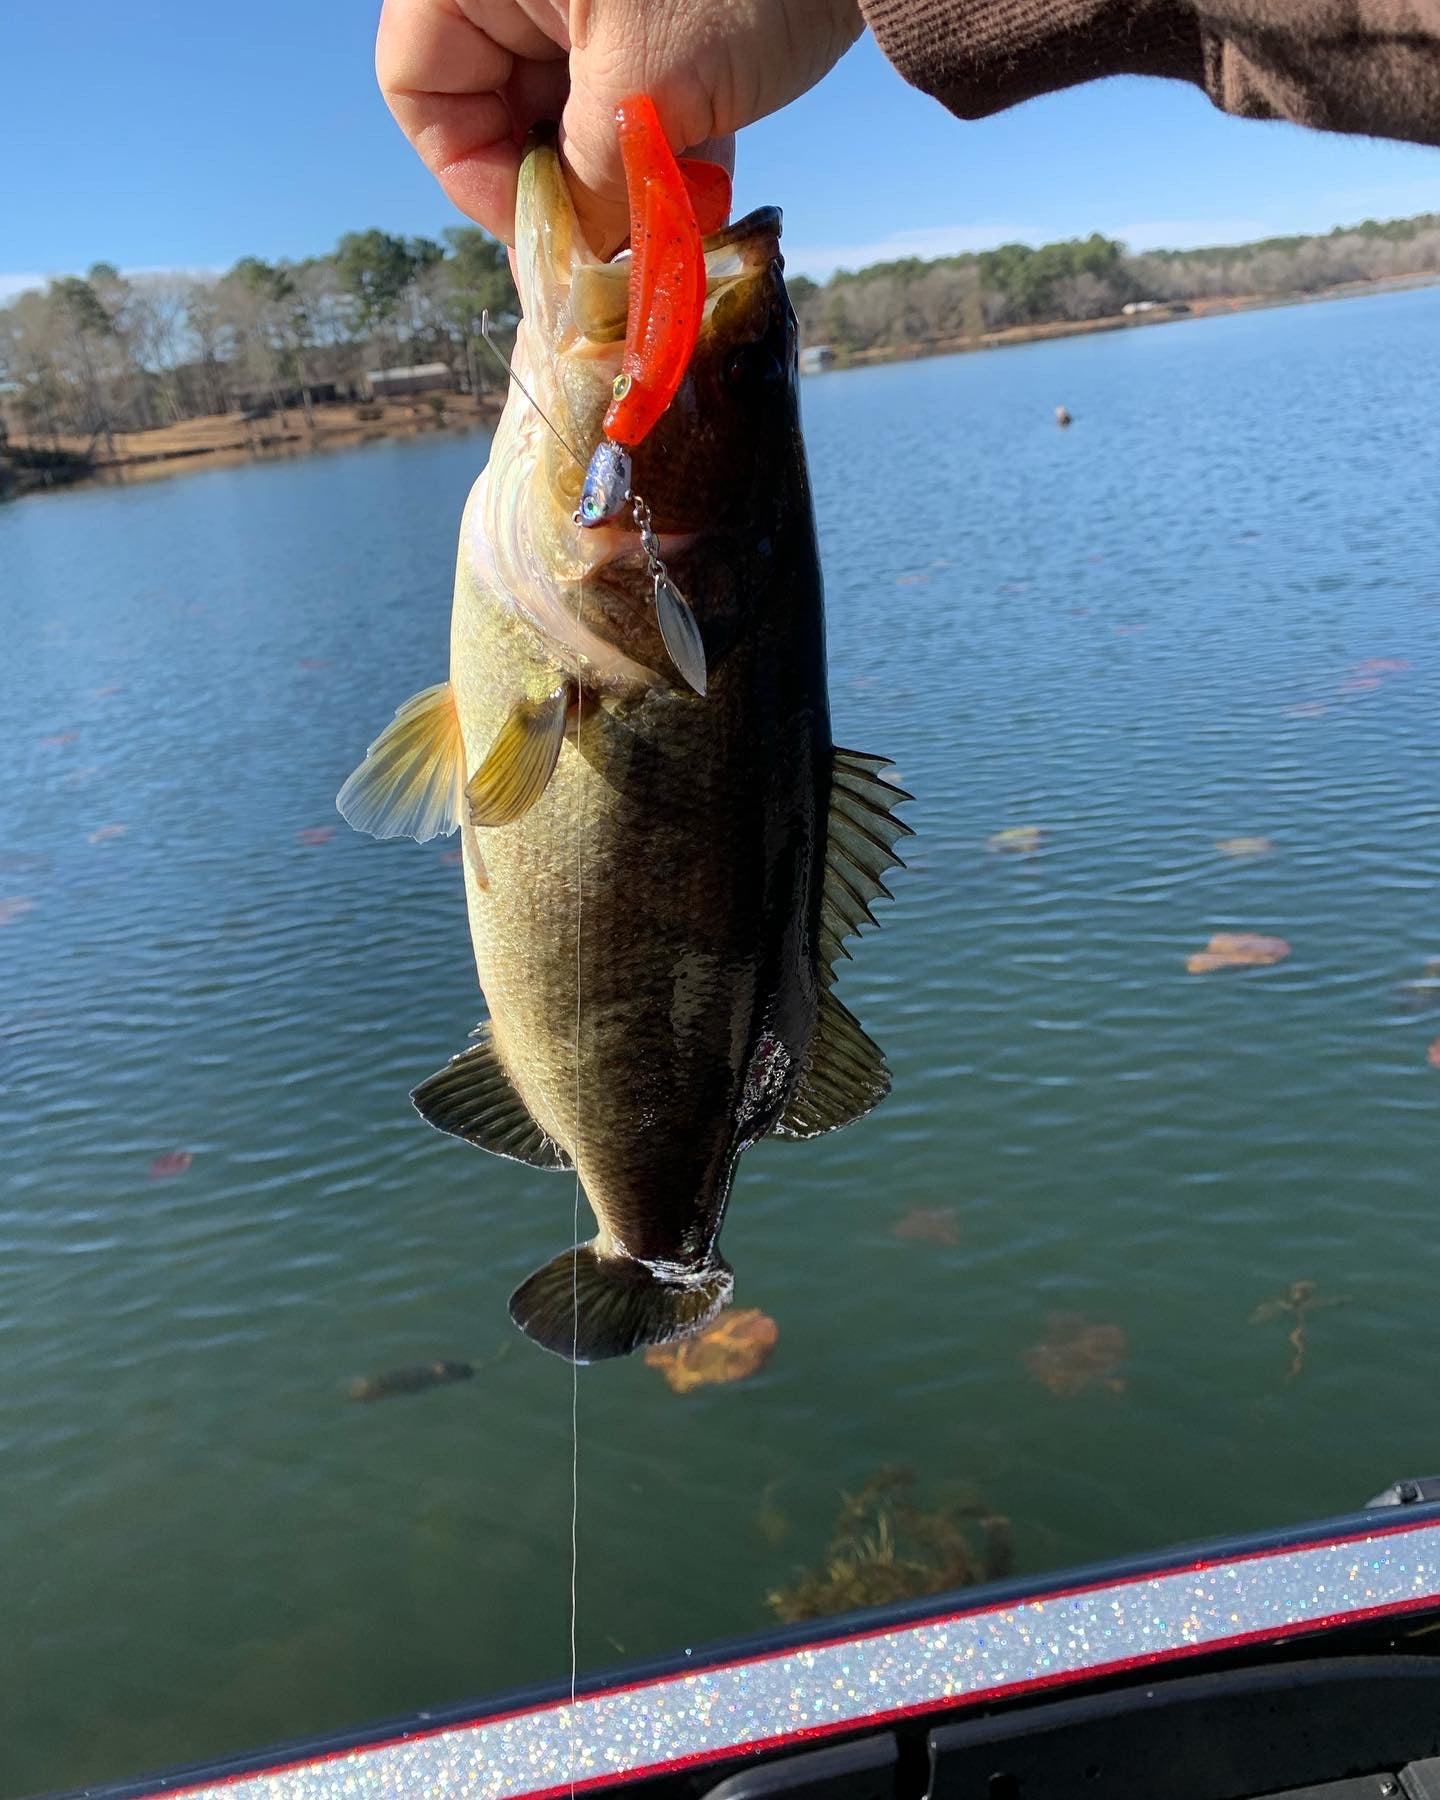 4” swim bait straight tail (chatter bait trailer) – East Texas Custom Baits